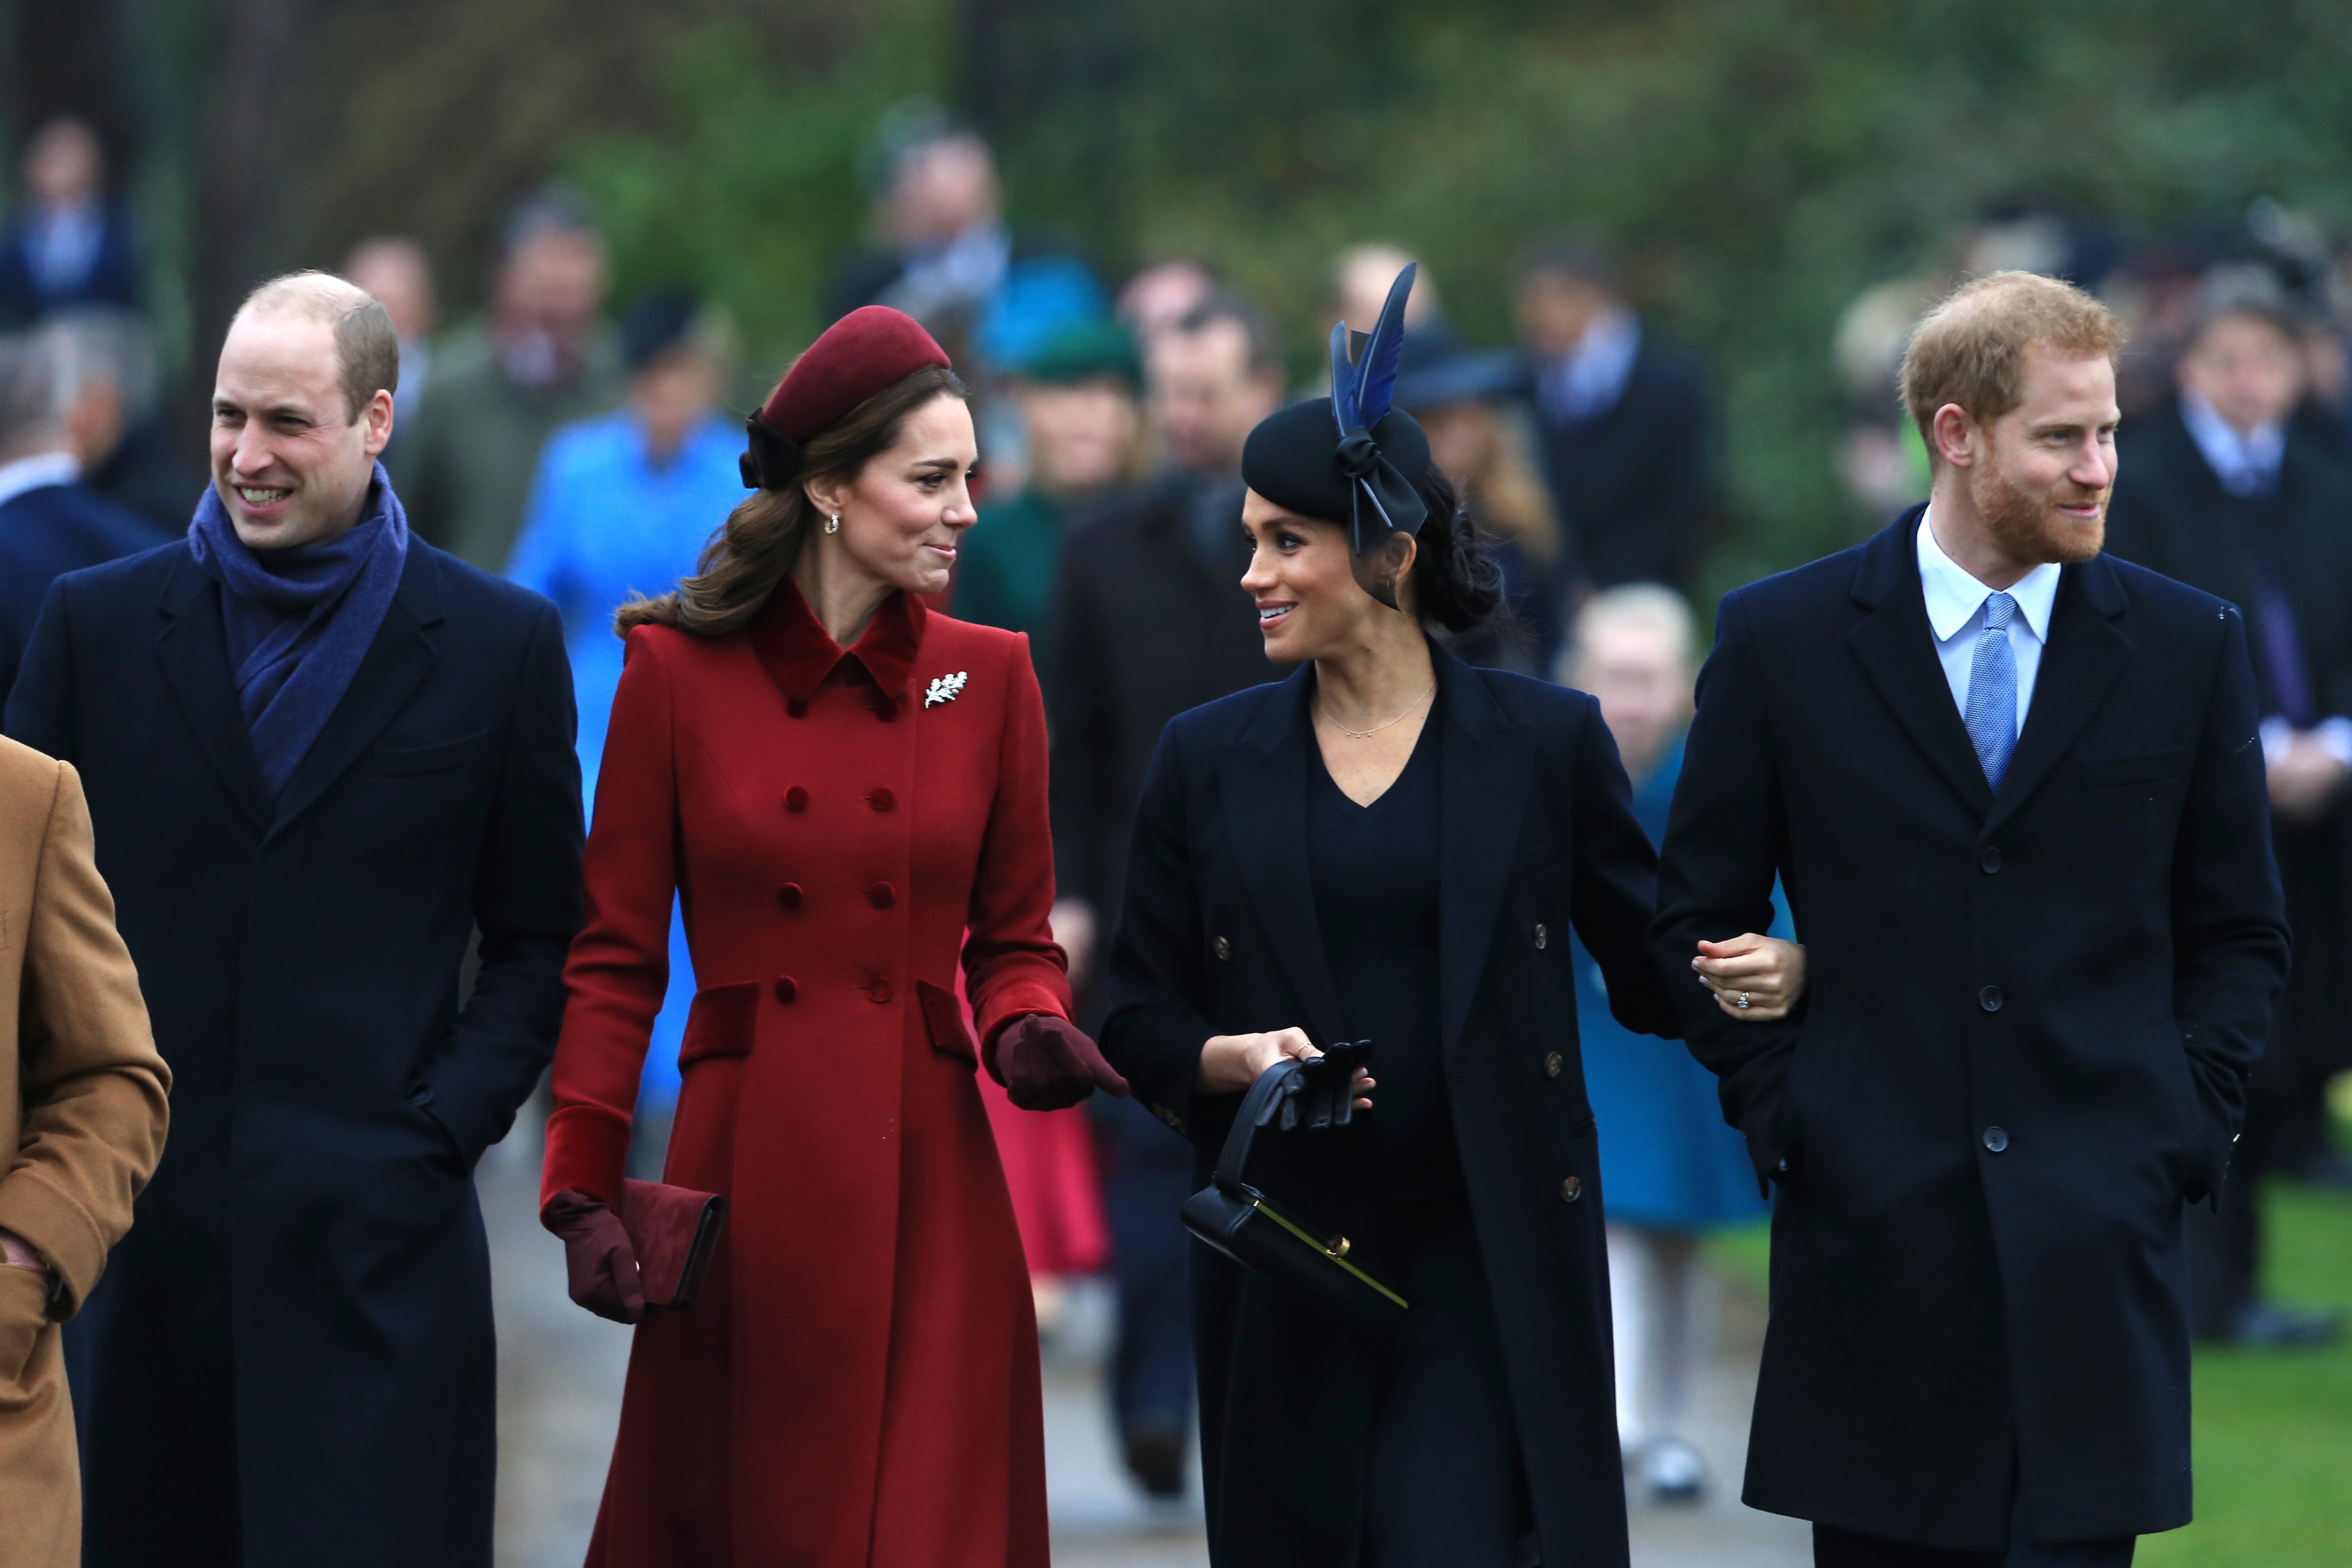 El príncipe William, Kate Middleton, Meghan Markle y el príncipe Harry en el servicio religioso del día de Navidad en la Iglesia de Santa María Magdalena en la finca de Sandringham, el 25 de diciembre de 2018 en King's Lynn, Inglaterra. | Foto: Getty Images